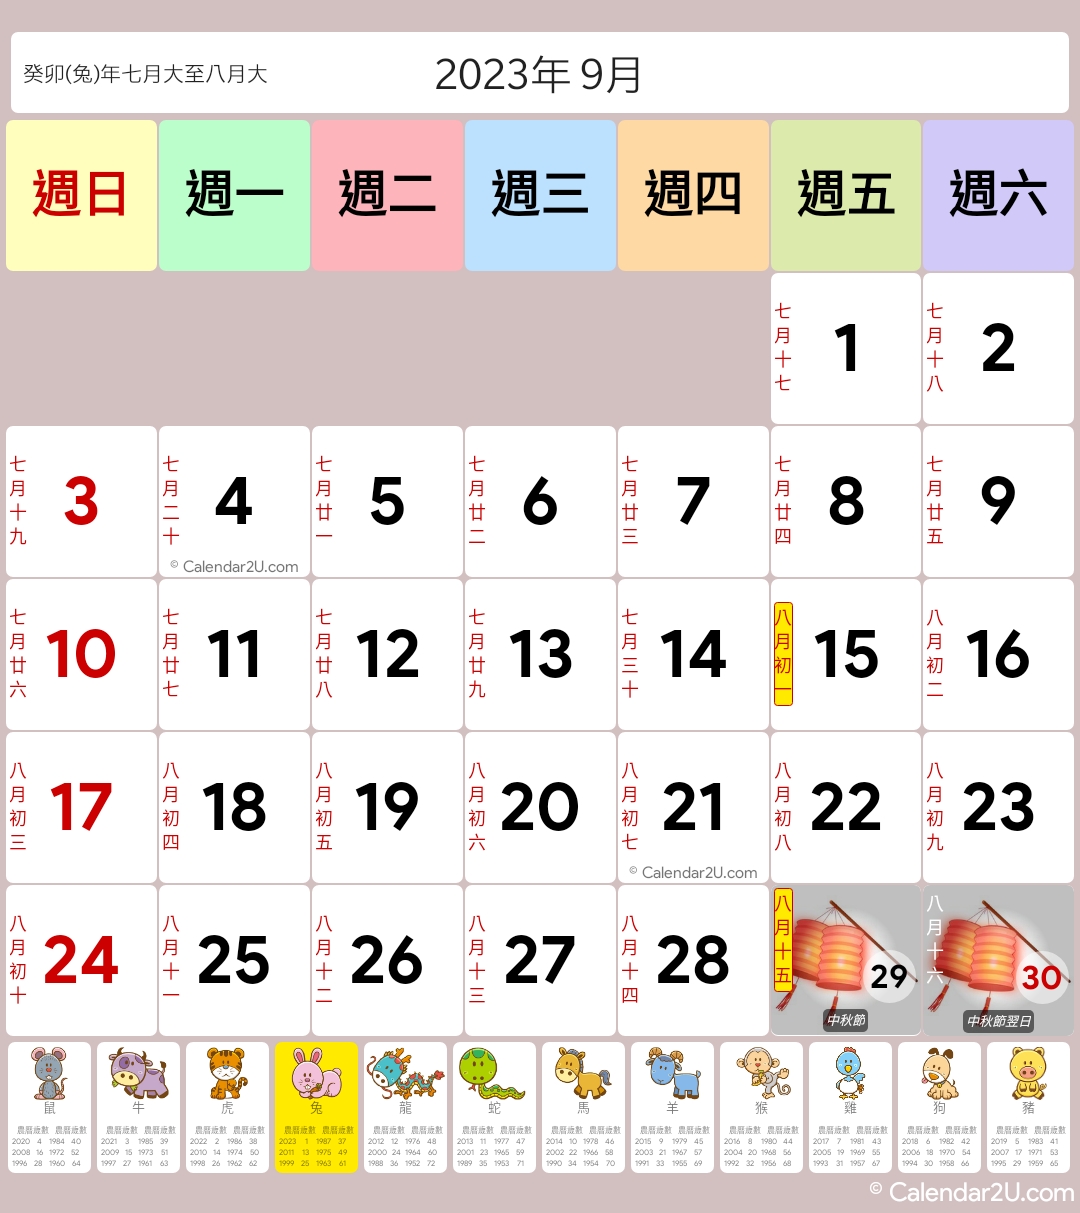 Hong Kong Calendar